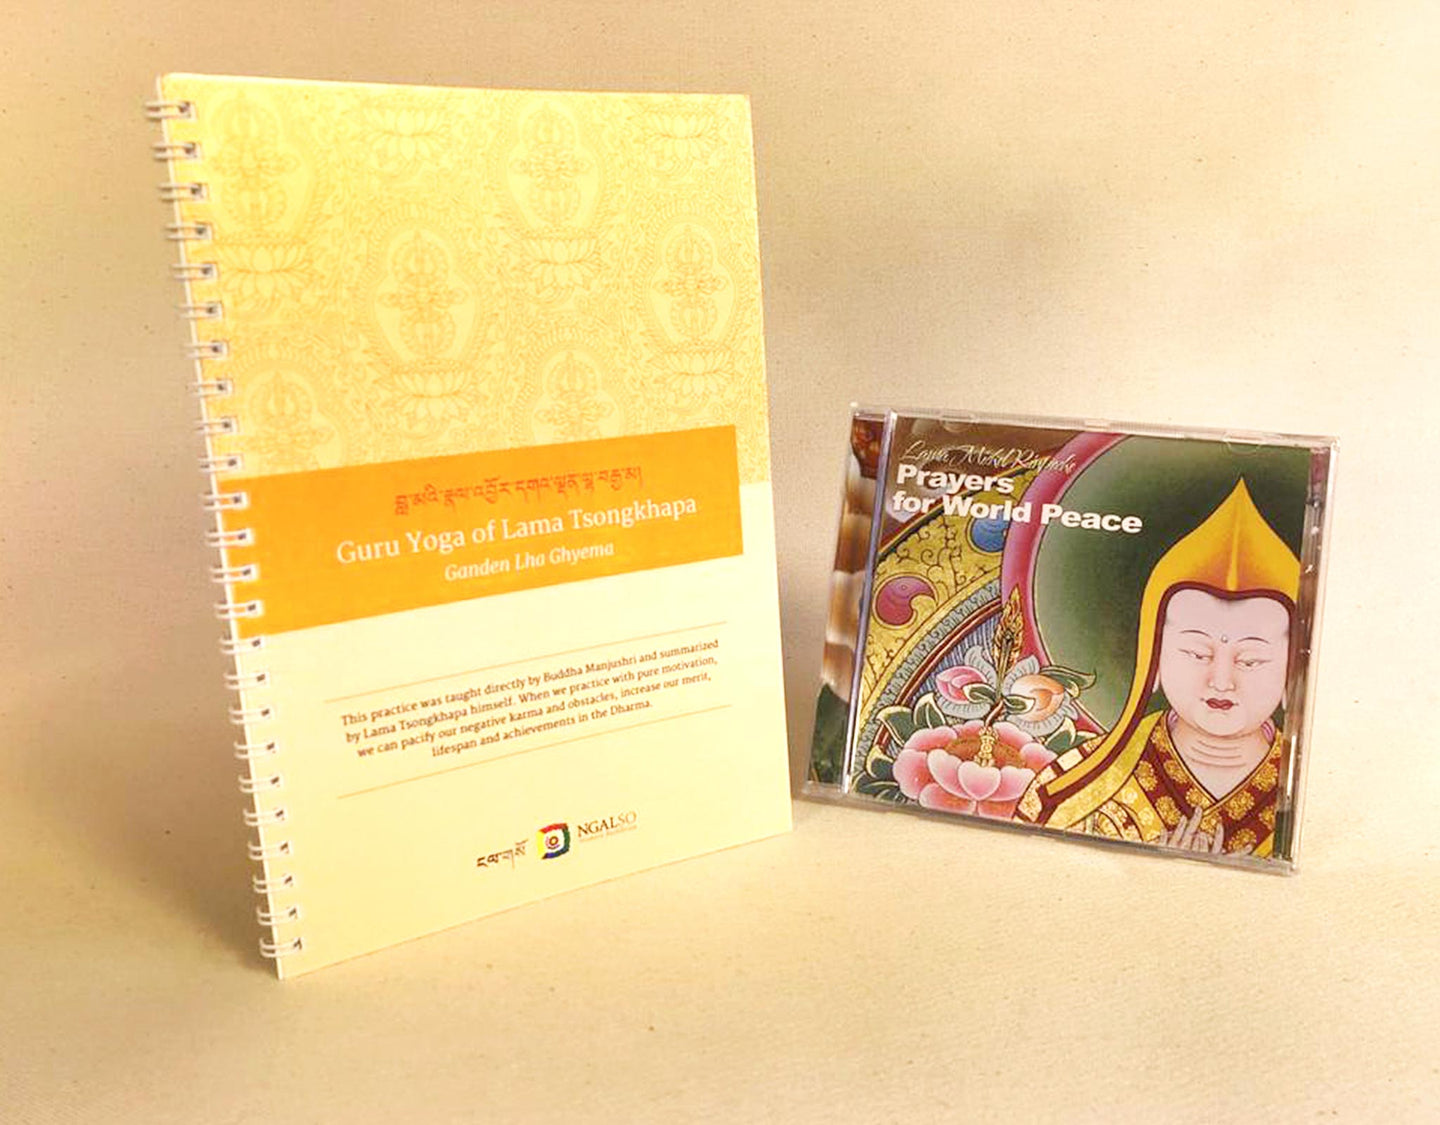 Guru Yoga of Lama Tsongkhapa and CD Prayers for world peace